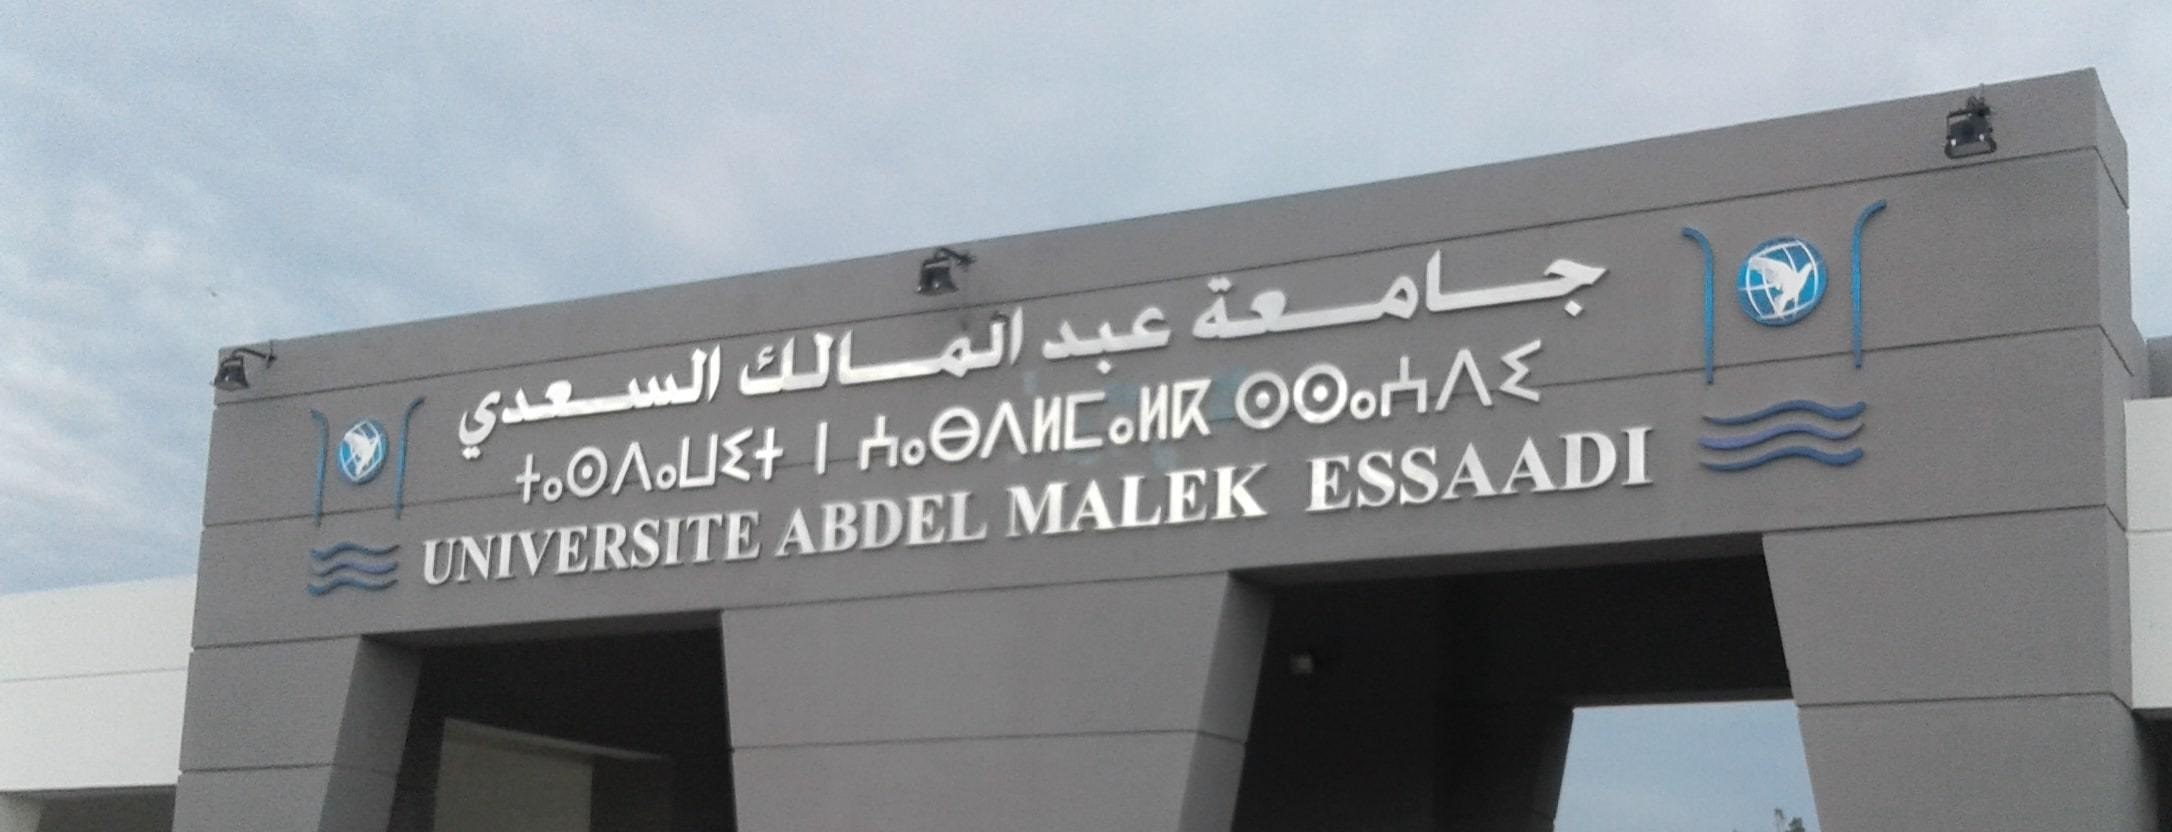 جامعة مغربية تنضم لأول مرة لتصنيف دولي مرموق